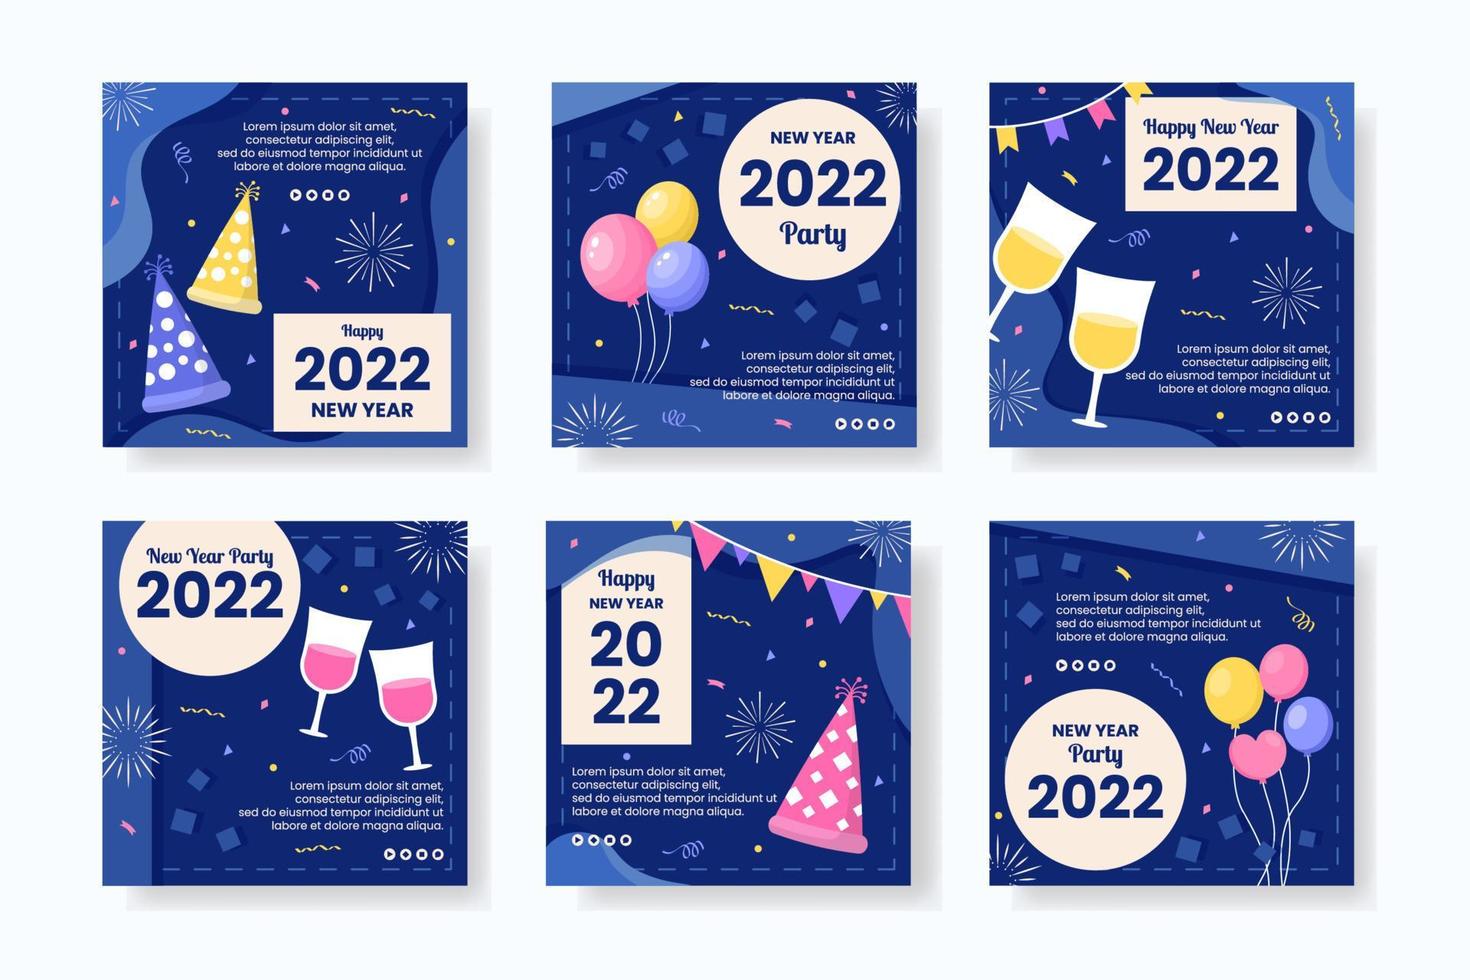 Feliz año nuevo 2022 plantilla de publicación ilustración de diseño plano editable de fondo cuadrado adecuado para redes sociales, alimentación, tarjetas, saludos y anuncios web en Internet vector